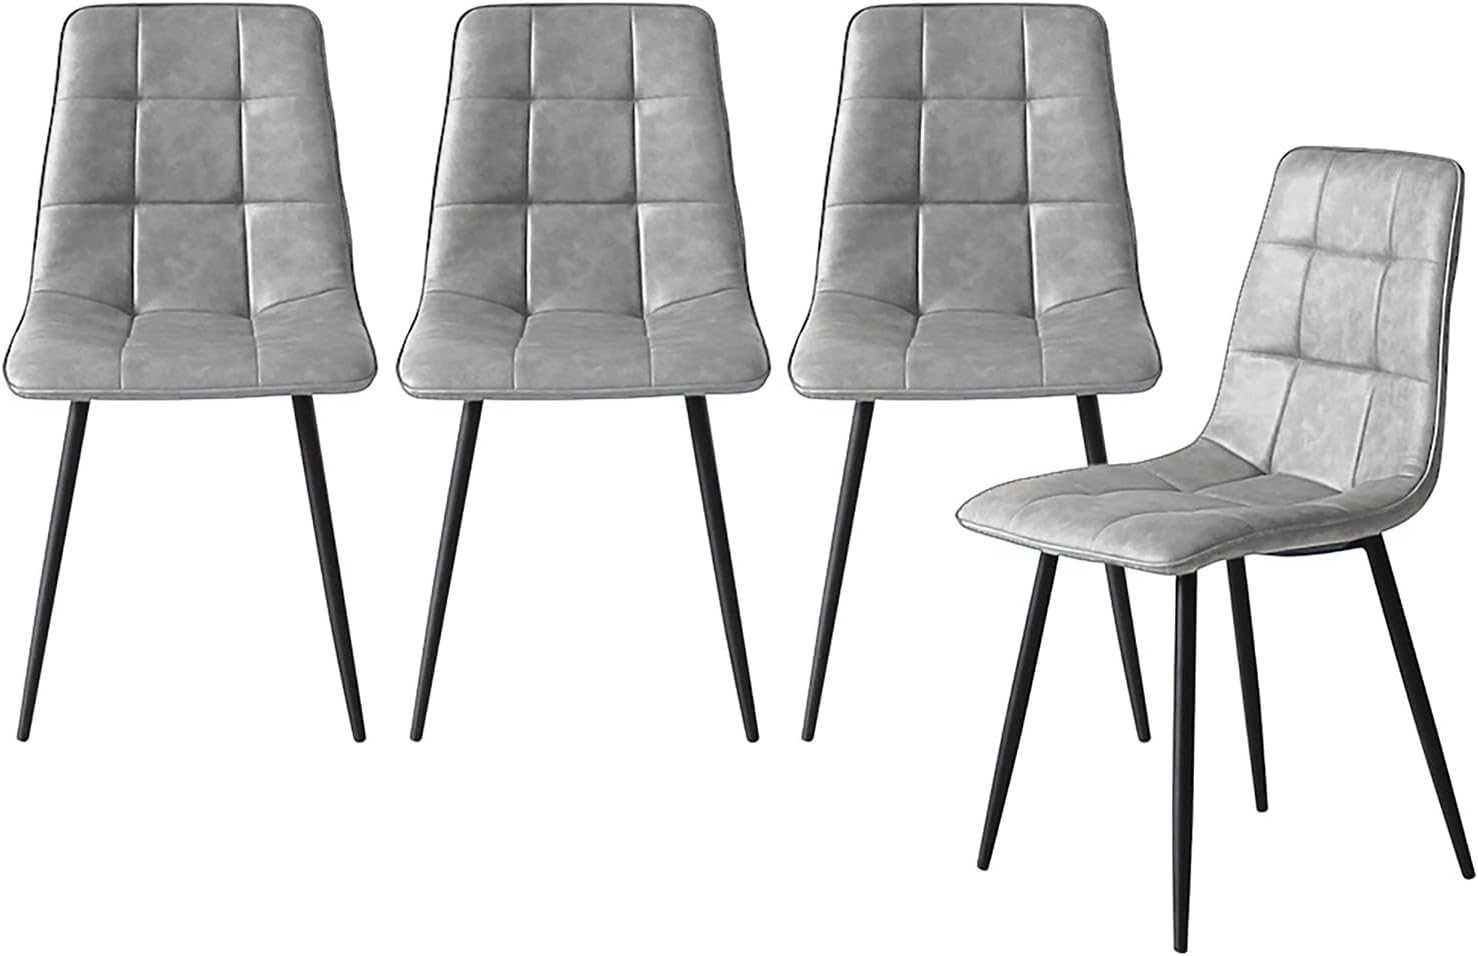 Трапезни столове Levede, комплект от 4 кухненски стола